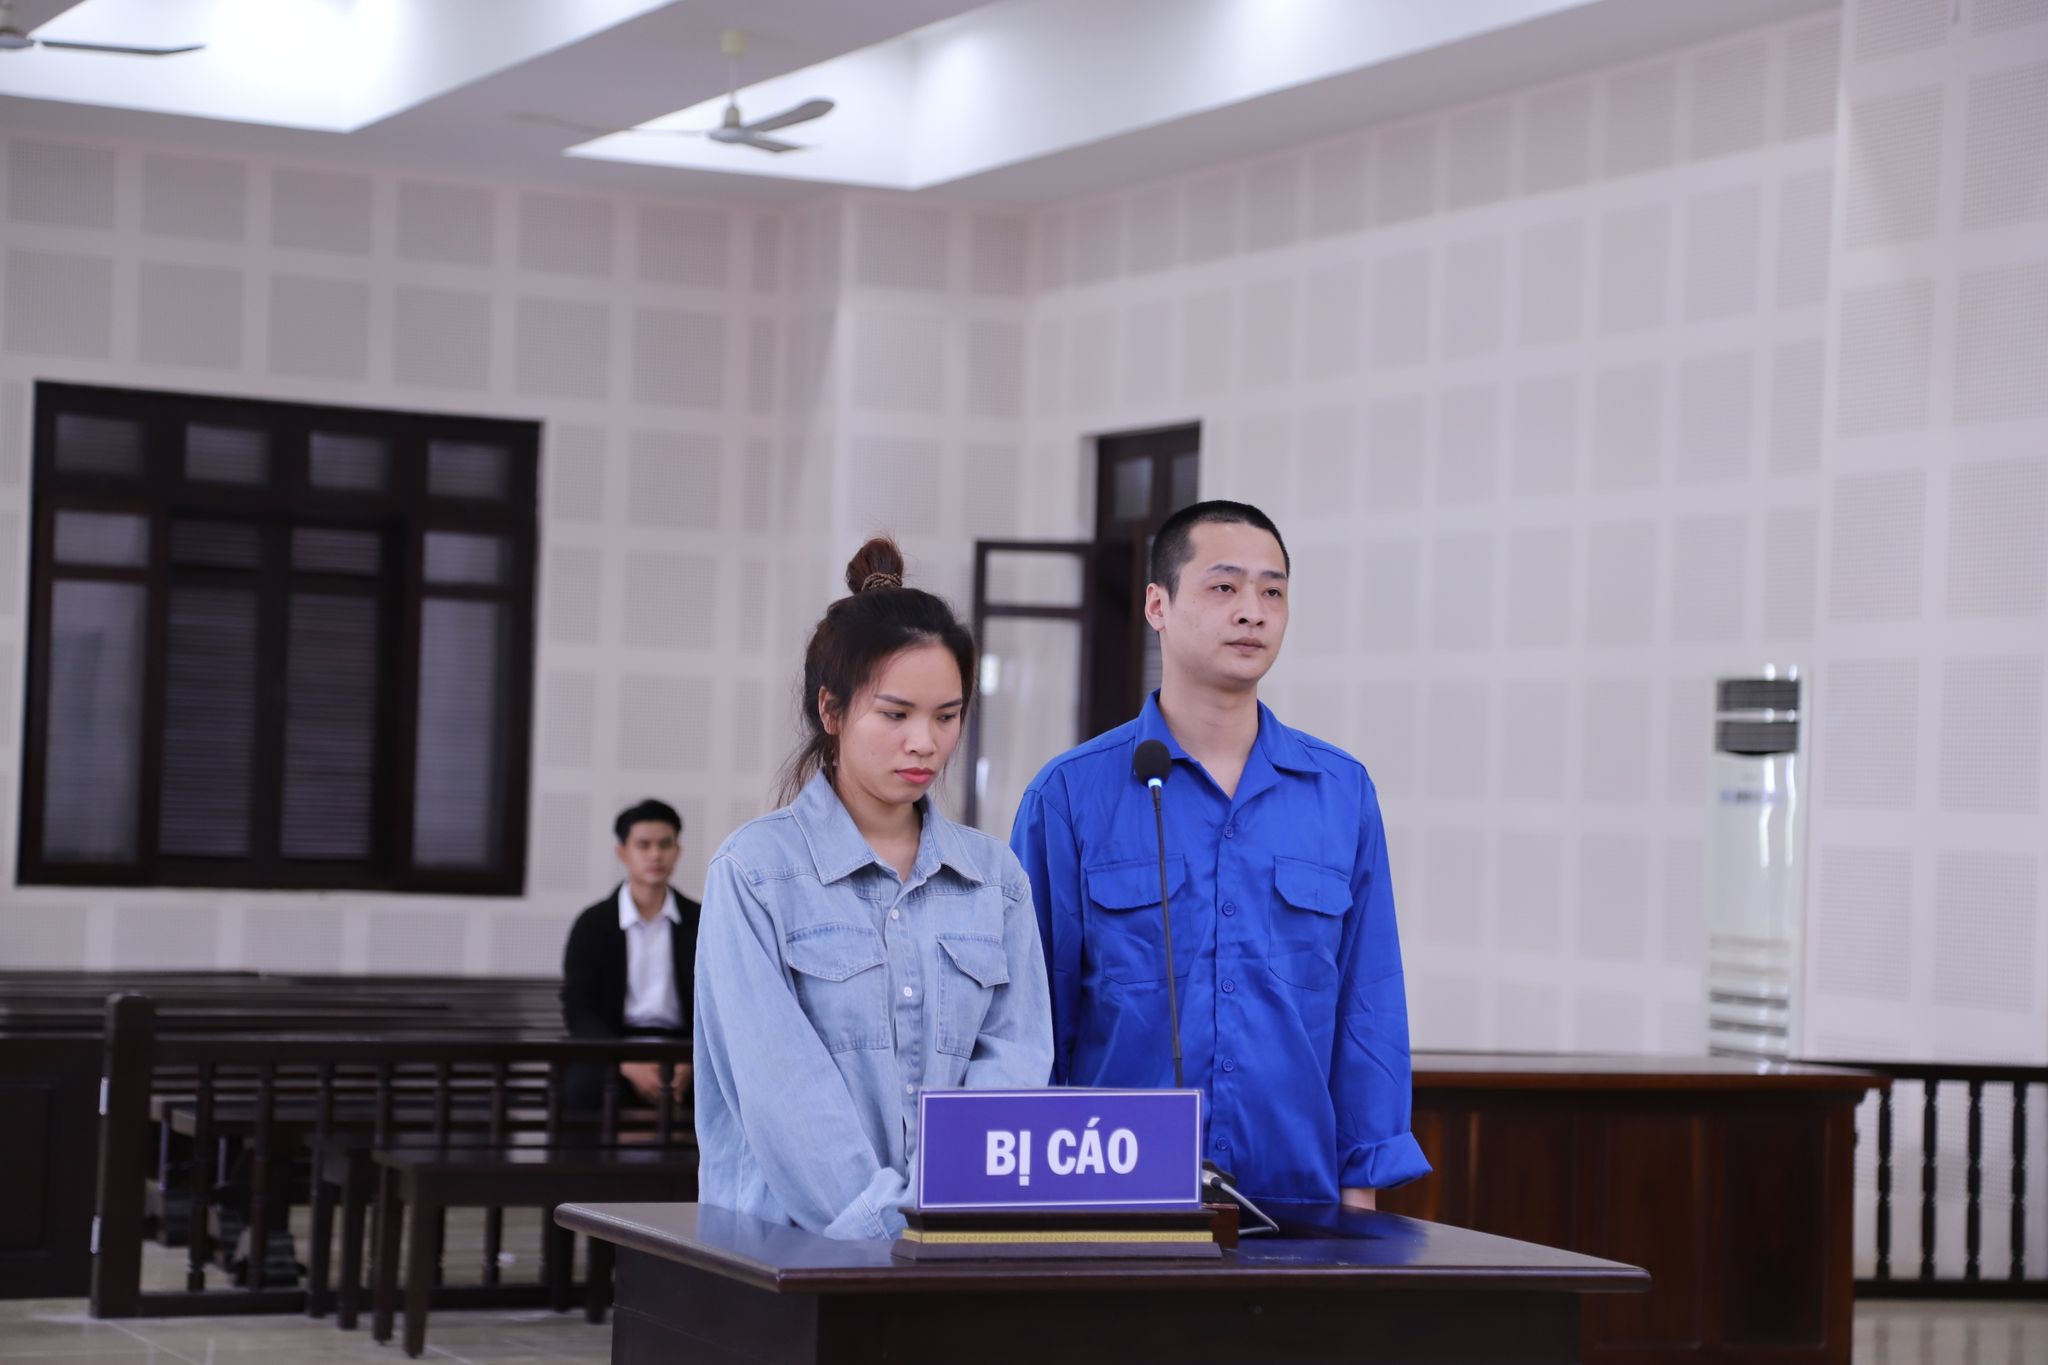 Đà Nẵng: Cấu kết tổ chức cho 27 người Trung Quốc nhập cảnh trái phép ở 'chui' trong khách sạn - Ảnh 1.